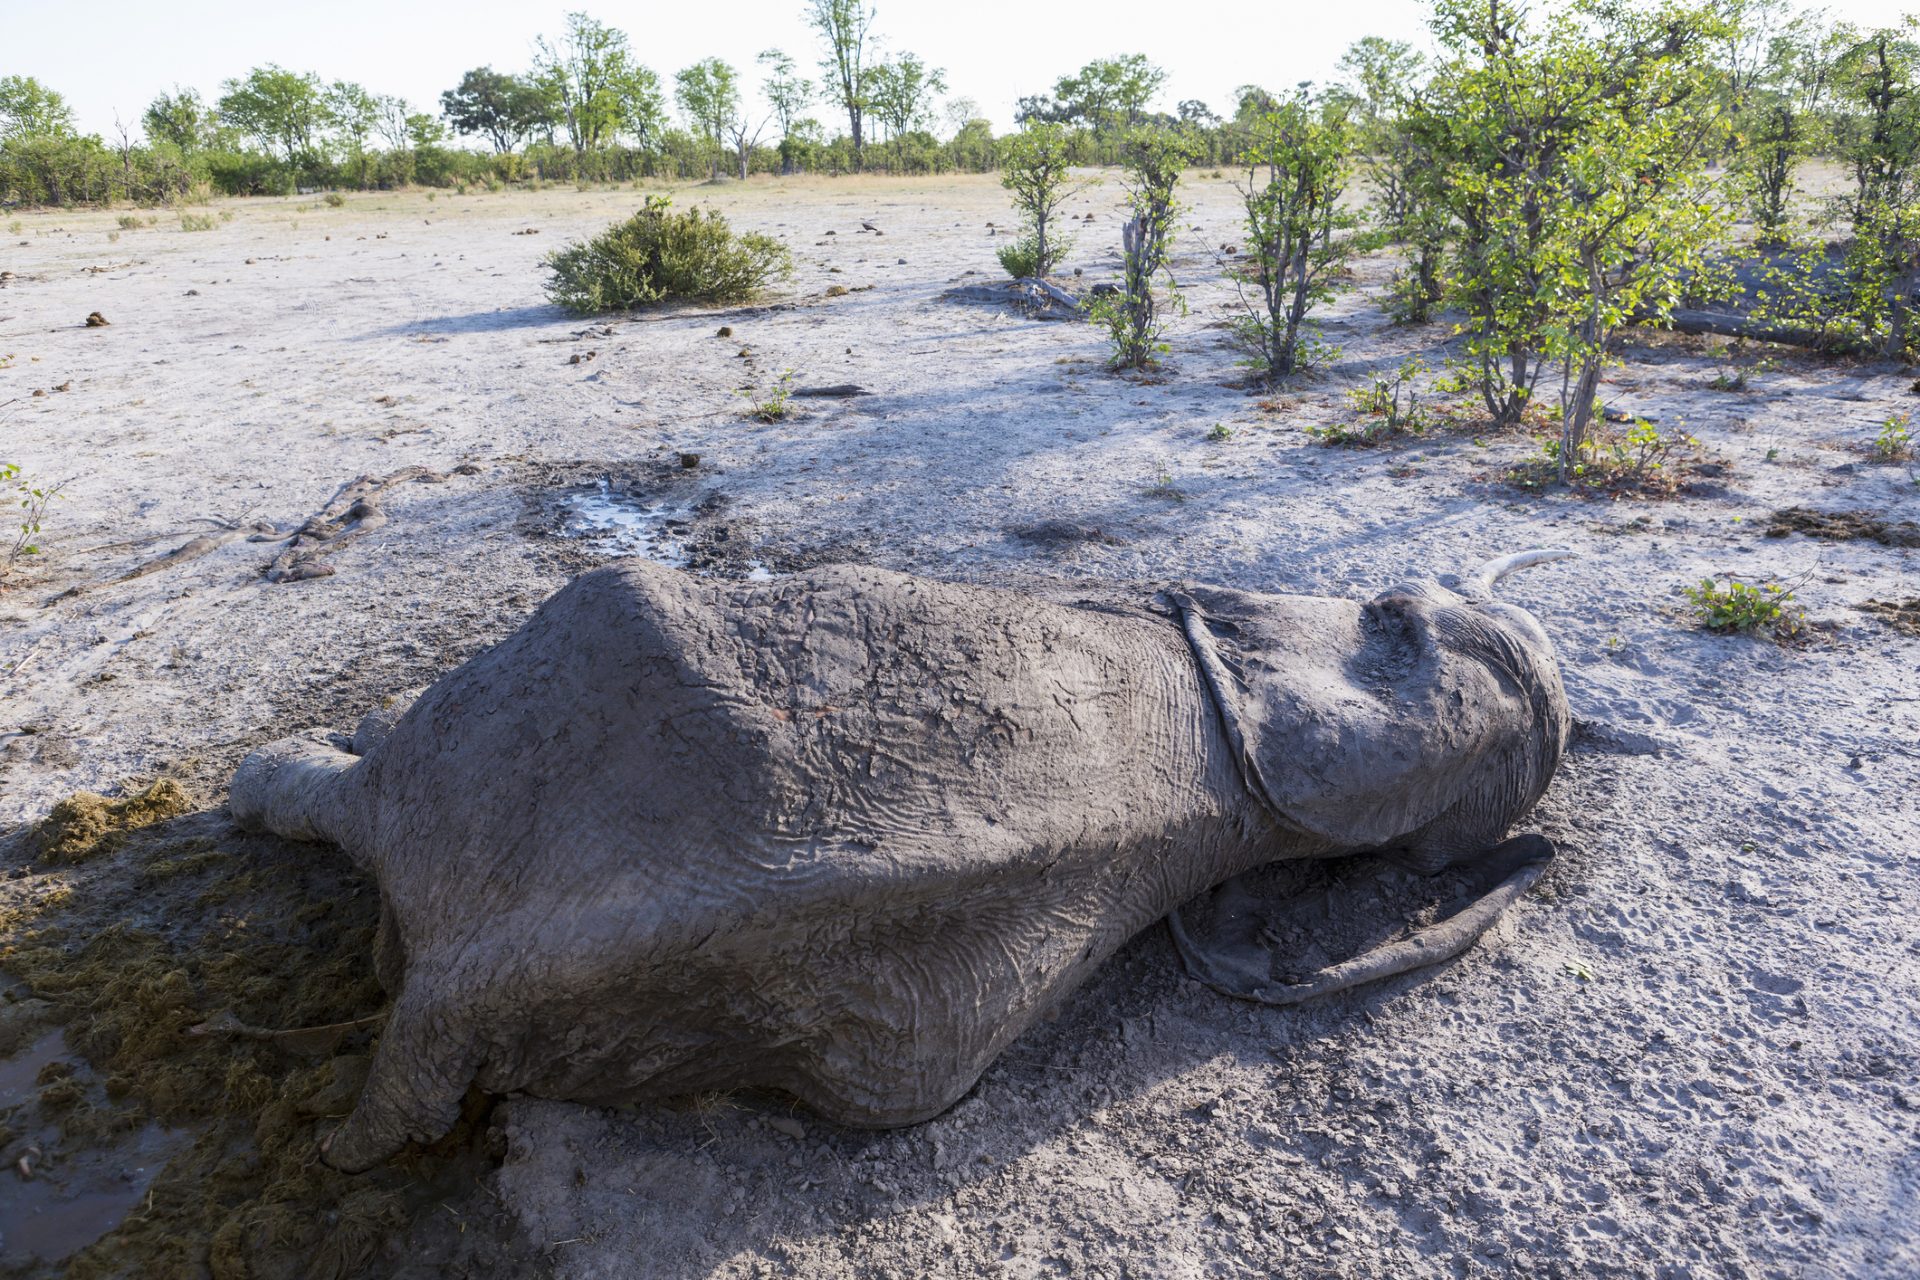 Similar elephant deaths in Zimbabwe 